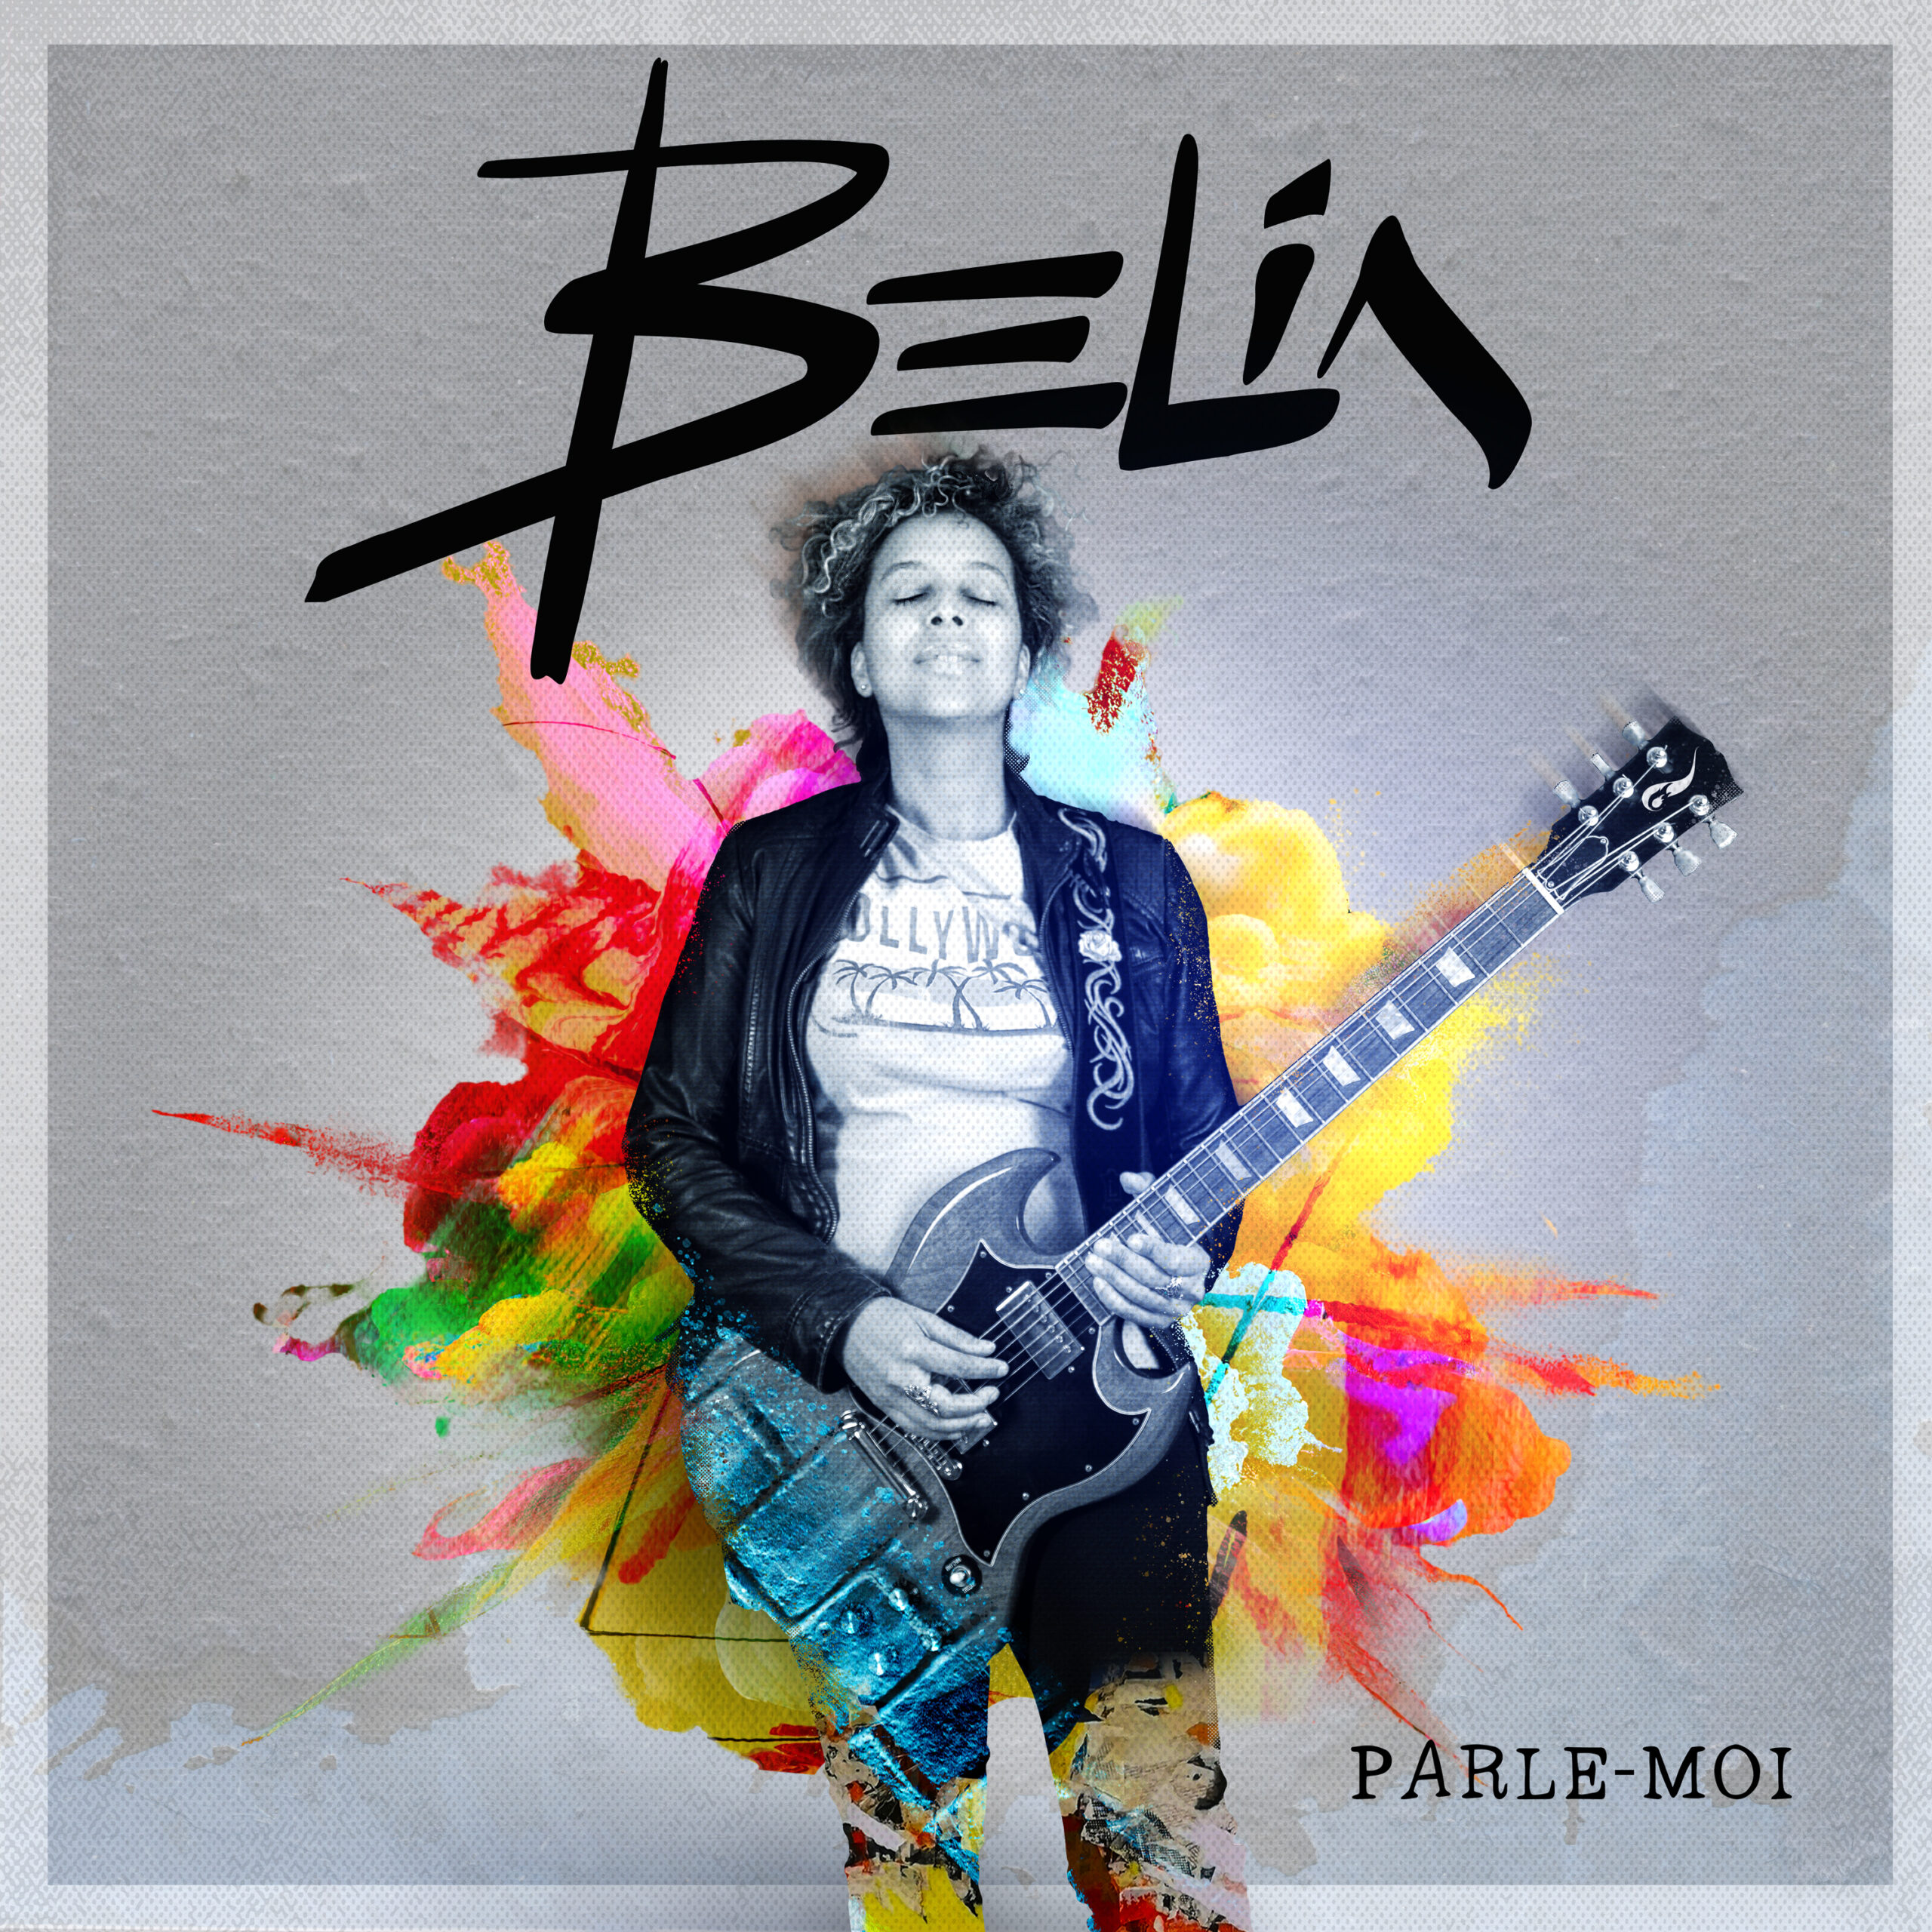 PARLE_MOI_BELIA_ALBUM